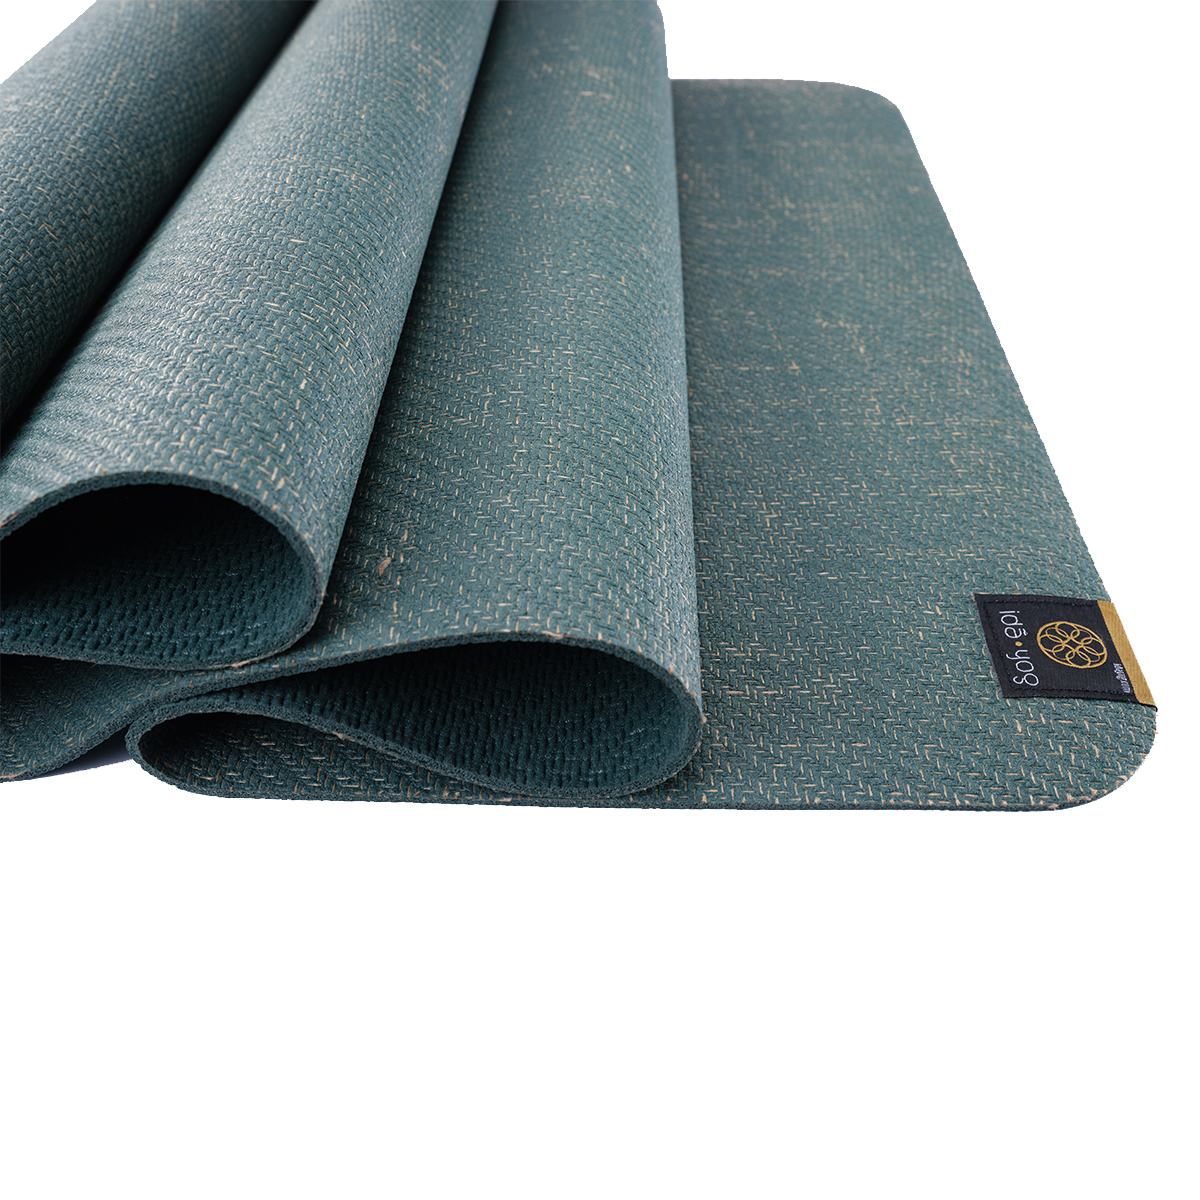 Masu Mudra - Premium Jute and Natural Rubber Yoga mat- Earthy grey